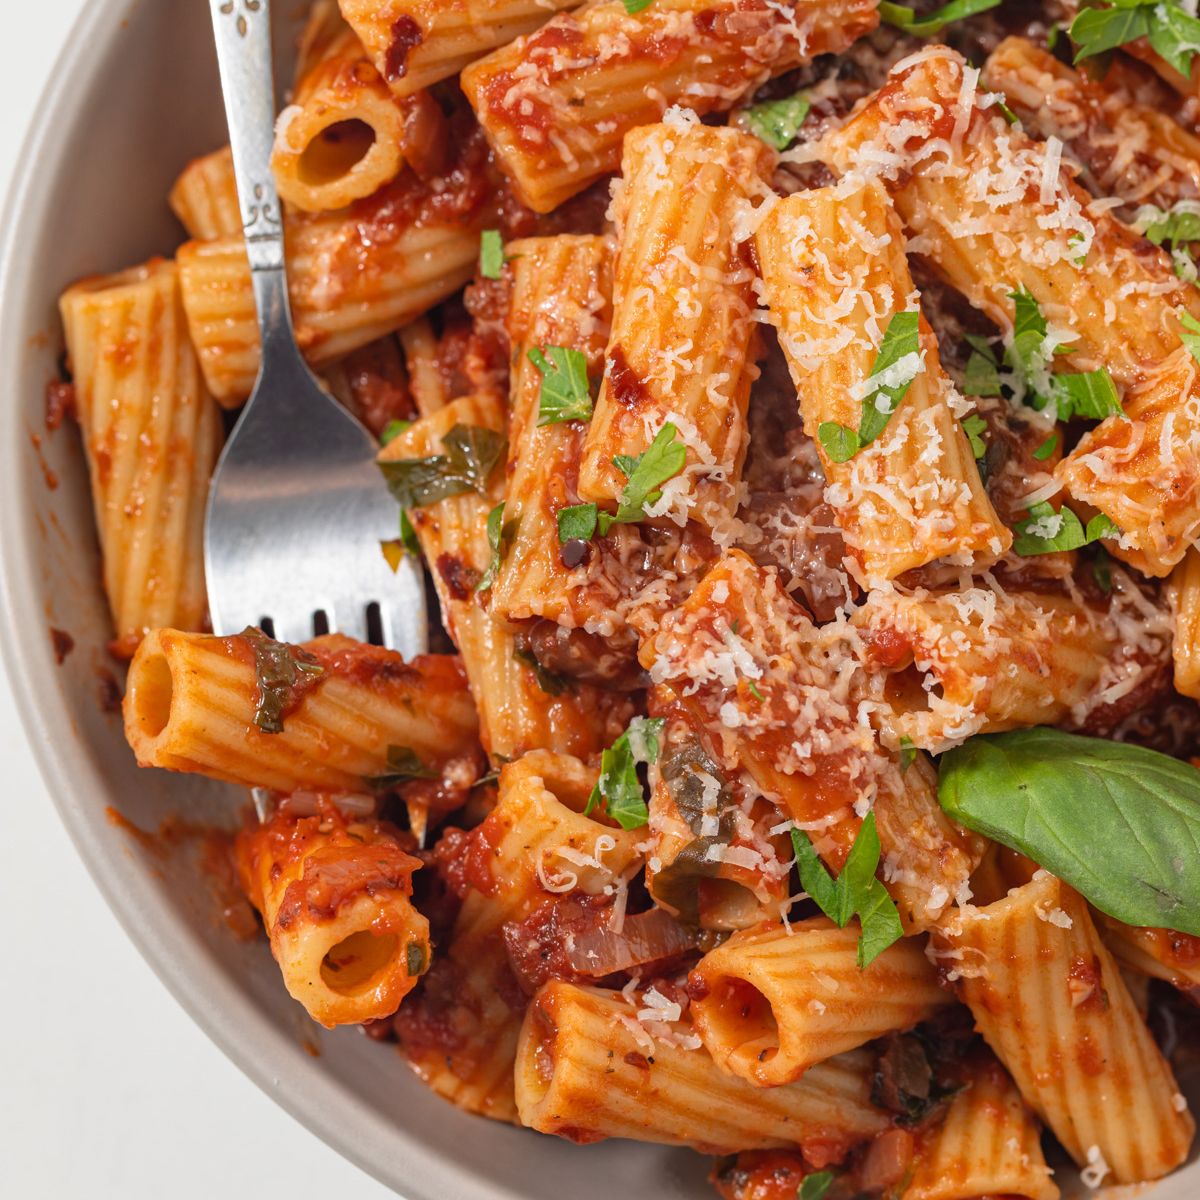 Close up of pasta with arrabbiata sauce.